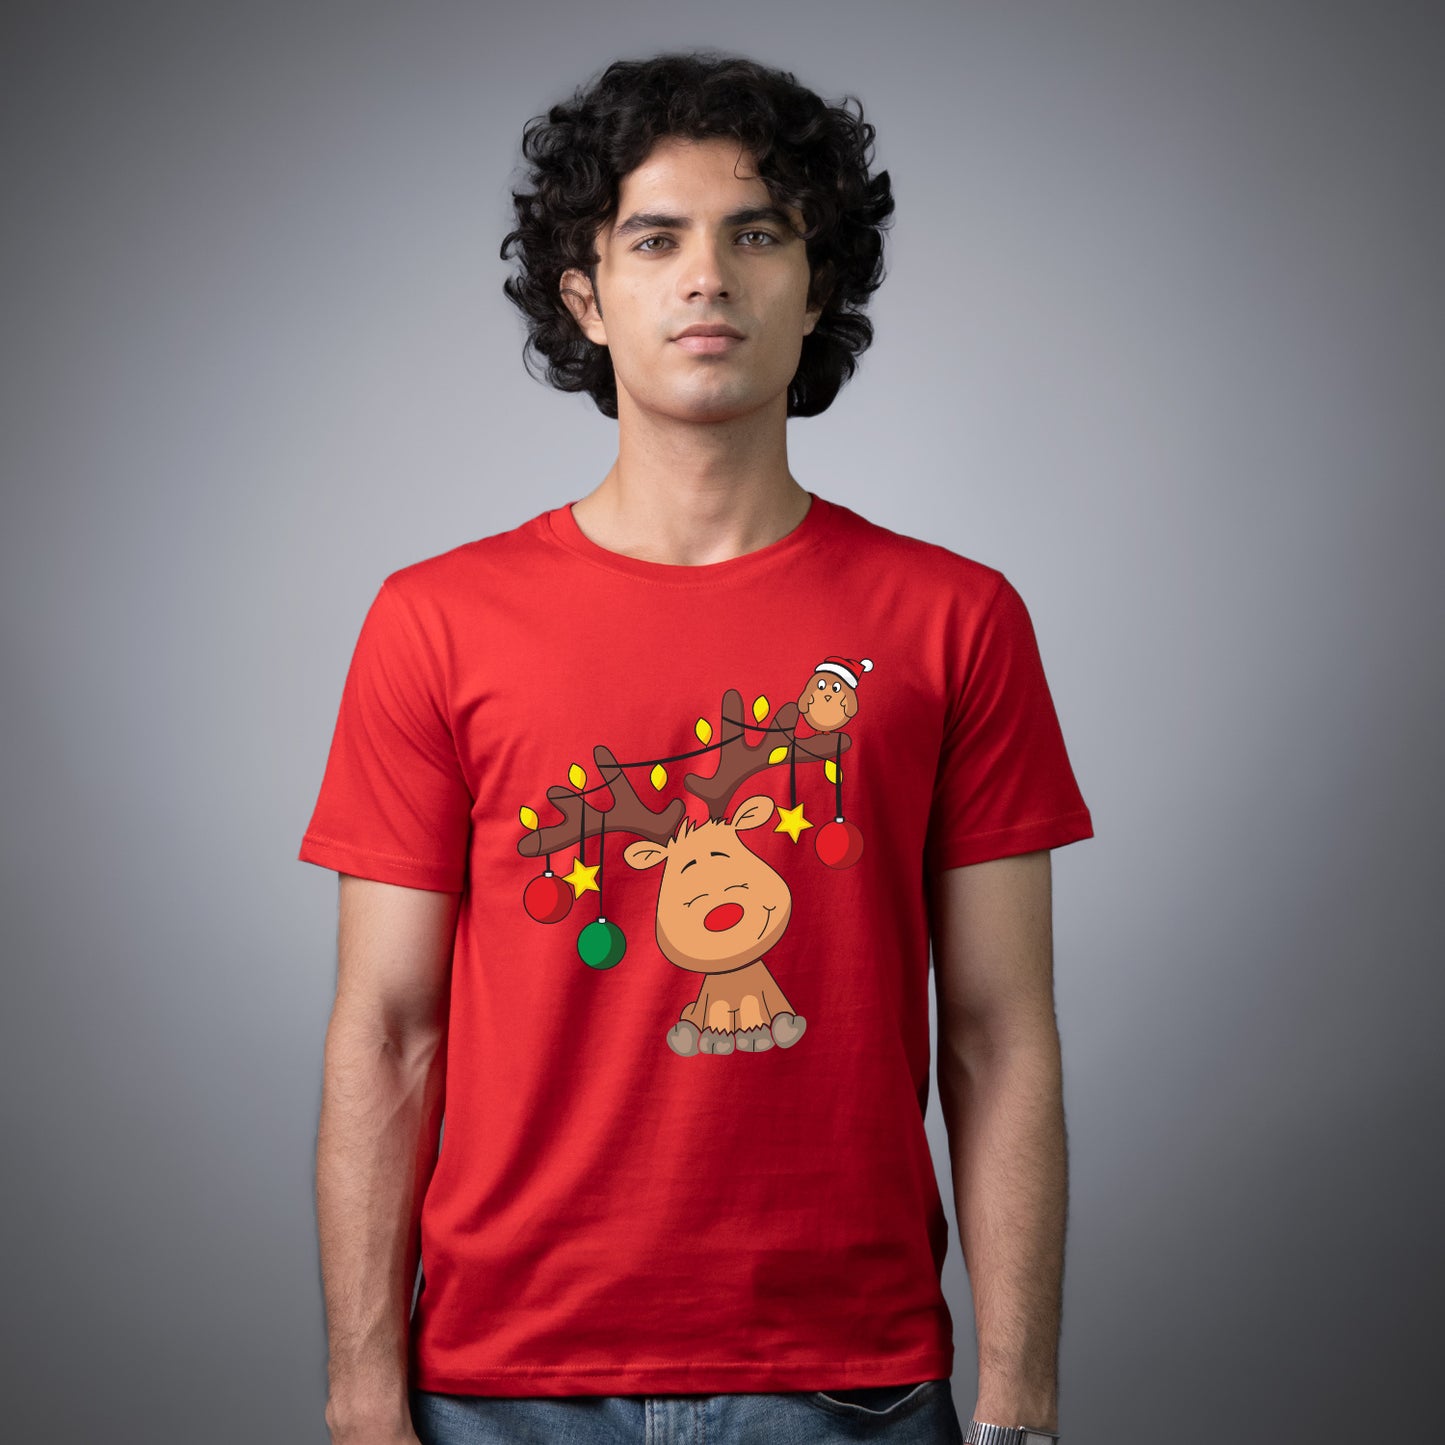 Christmas Reindeer on T-shirt